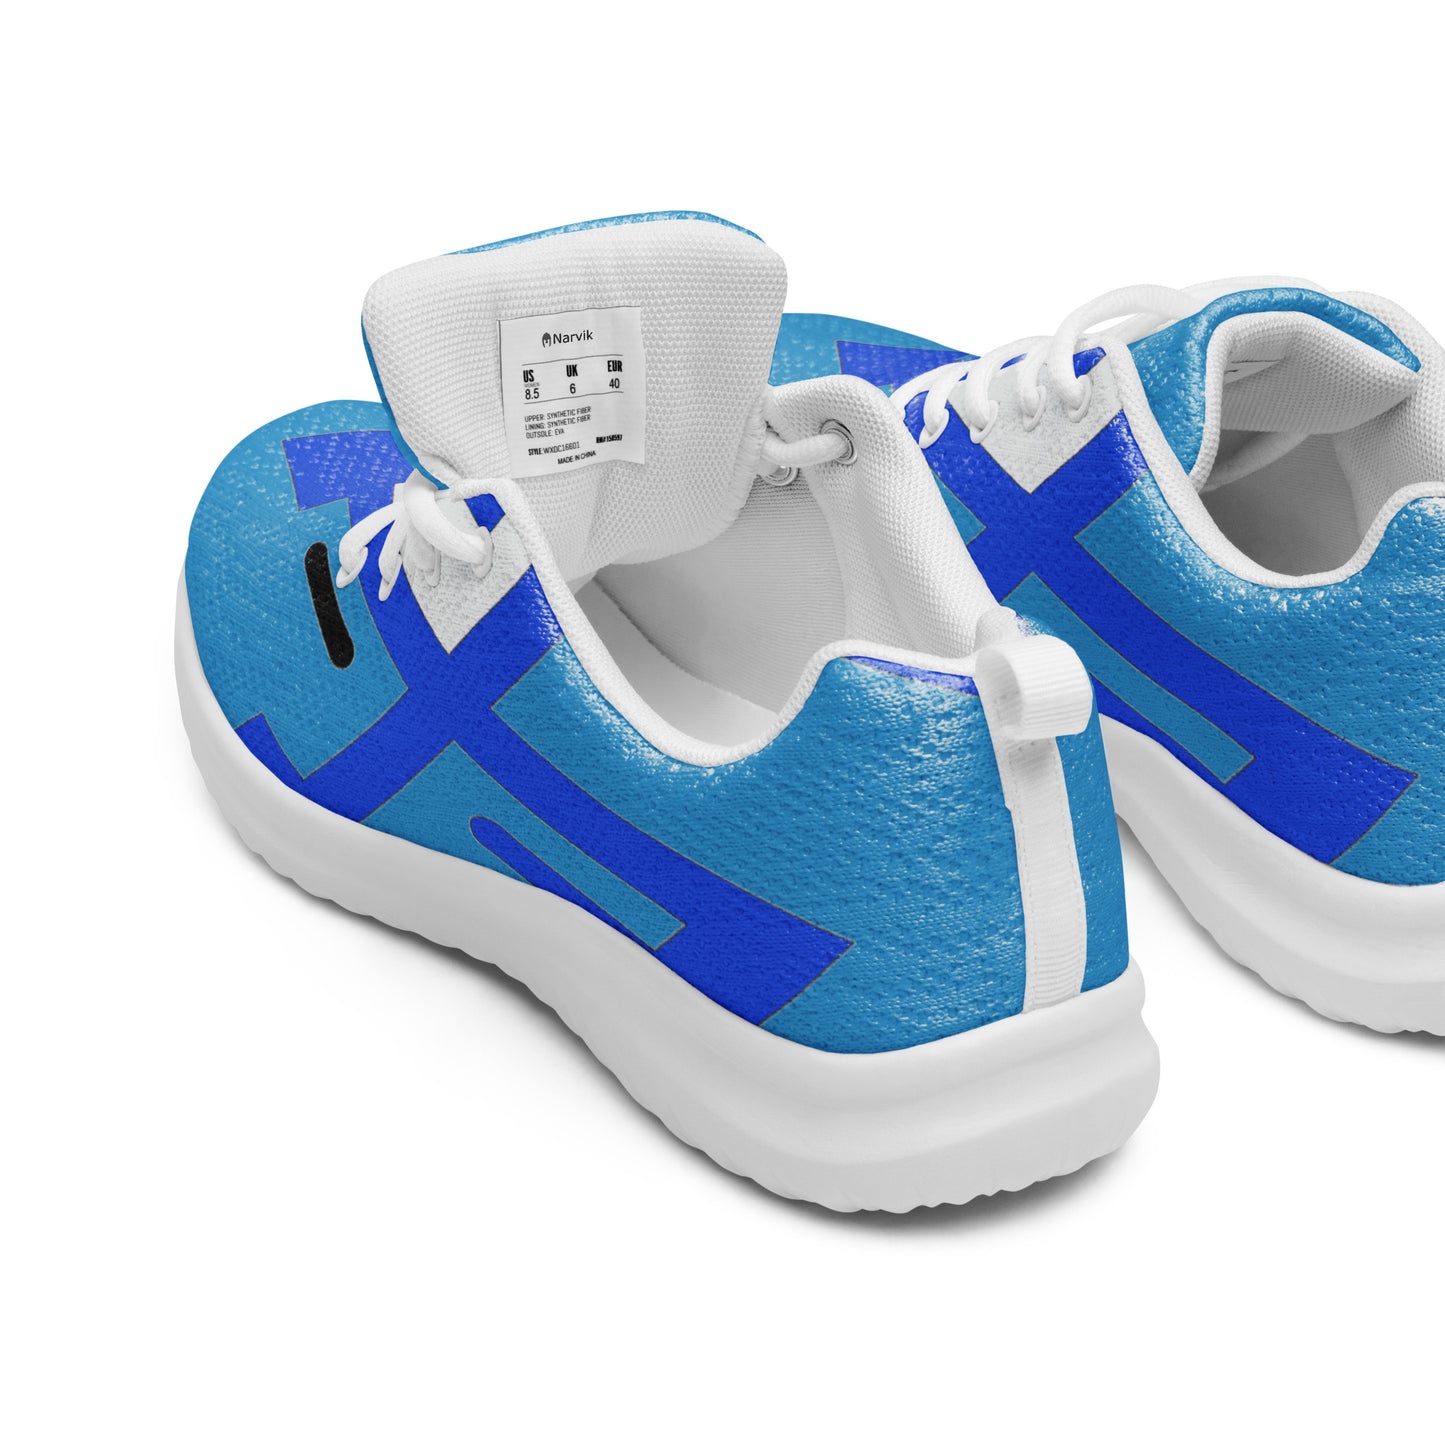 Men’s athletic shoes  - MS 500 Blue Dragon